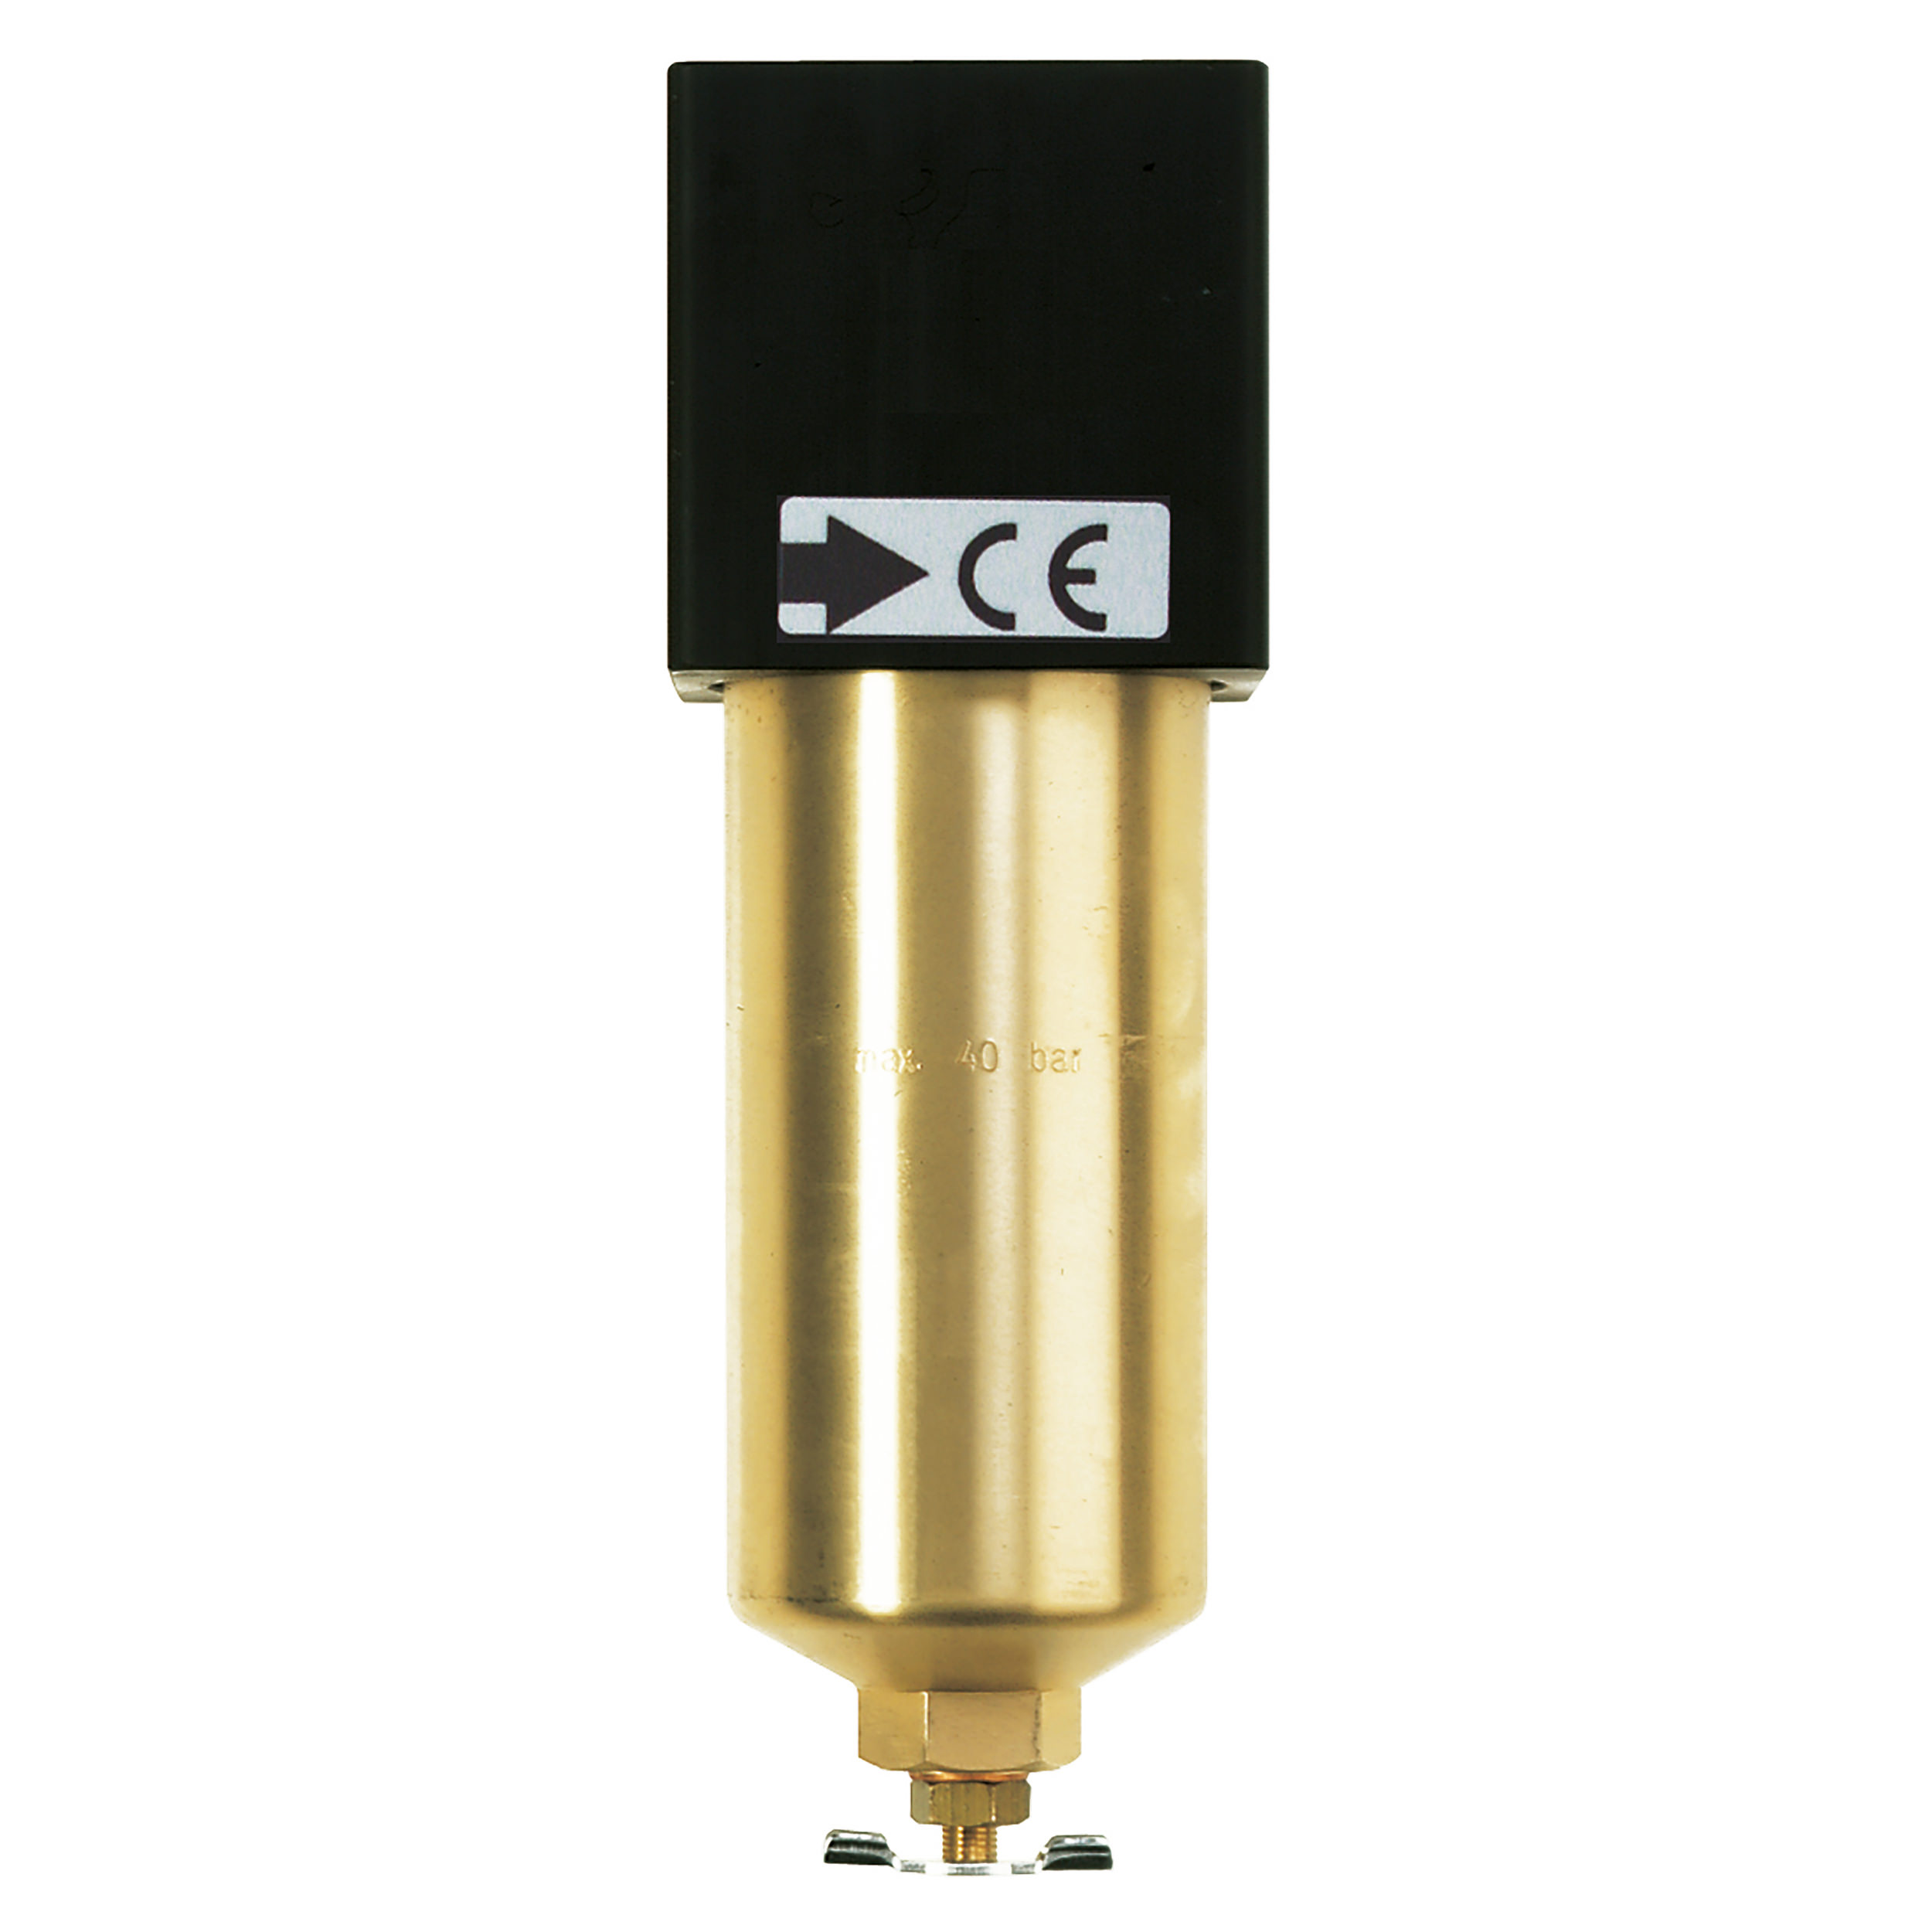 Microfilter standard 40 bar, BG 40, G½, metal bowl, manual drain valve